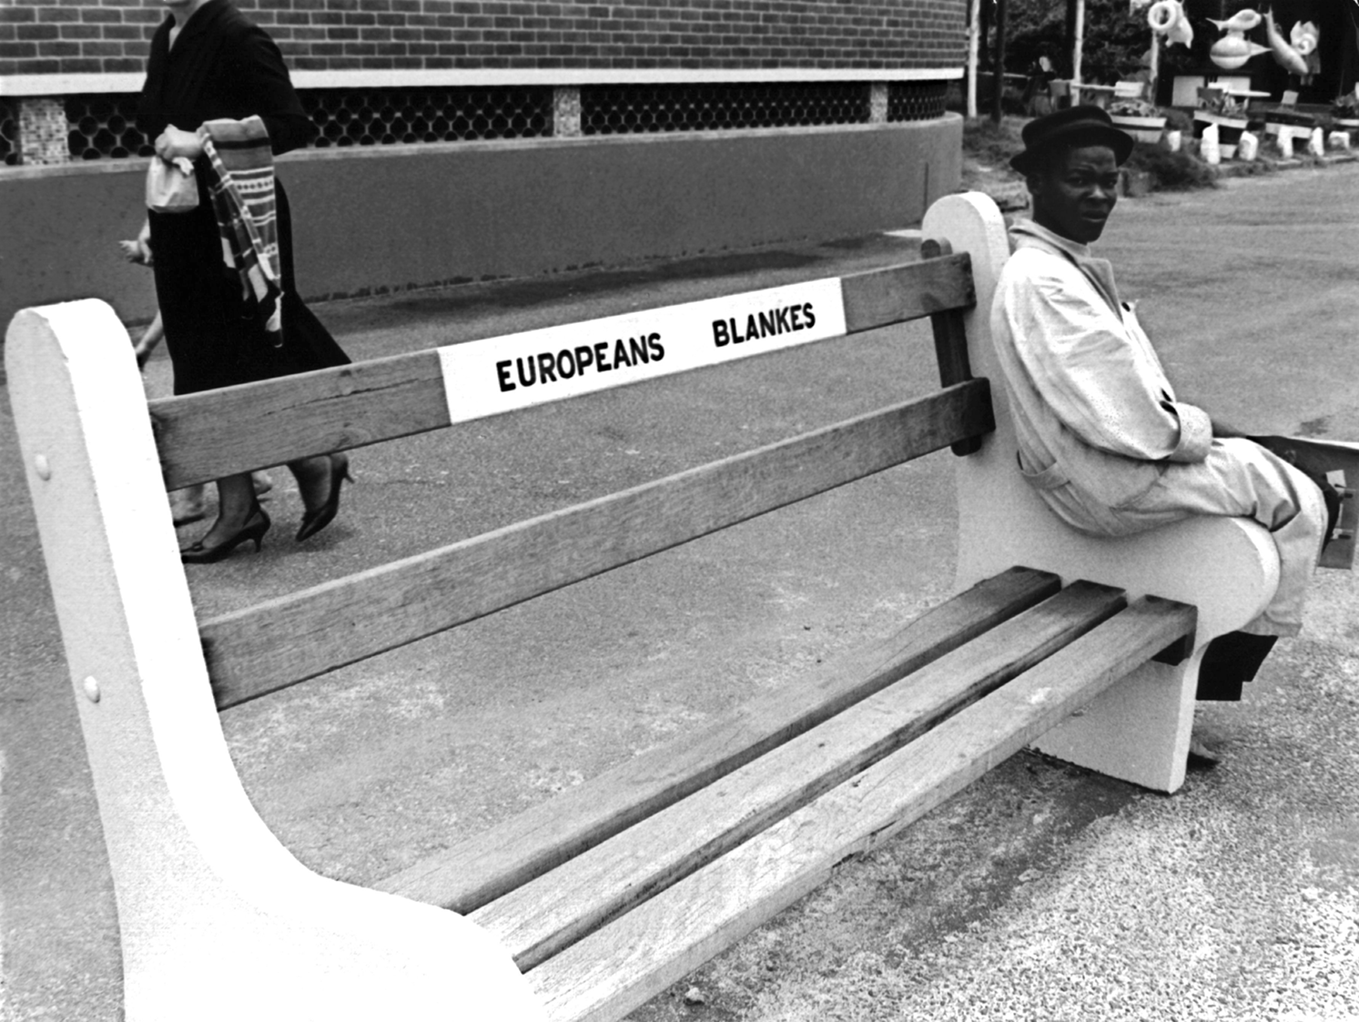 Fotografia em preto e branco. Destacando um banco em uma calçada. No cento do banco, o texto: EUROPEANS BLANKES. À direita, um homem negro sentado na ponta do banco.